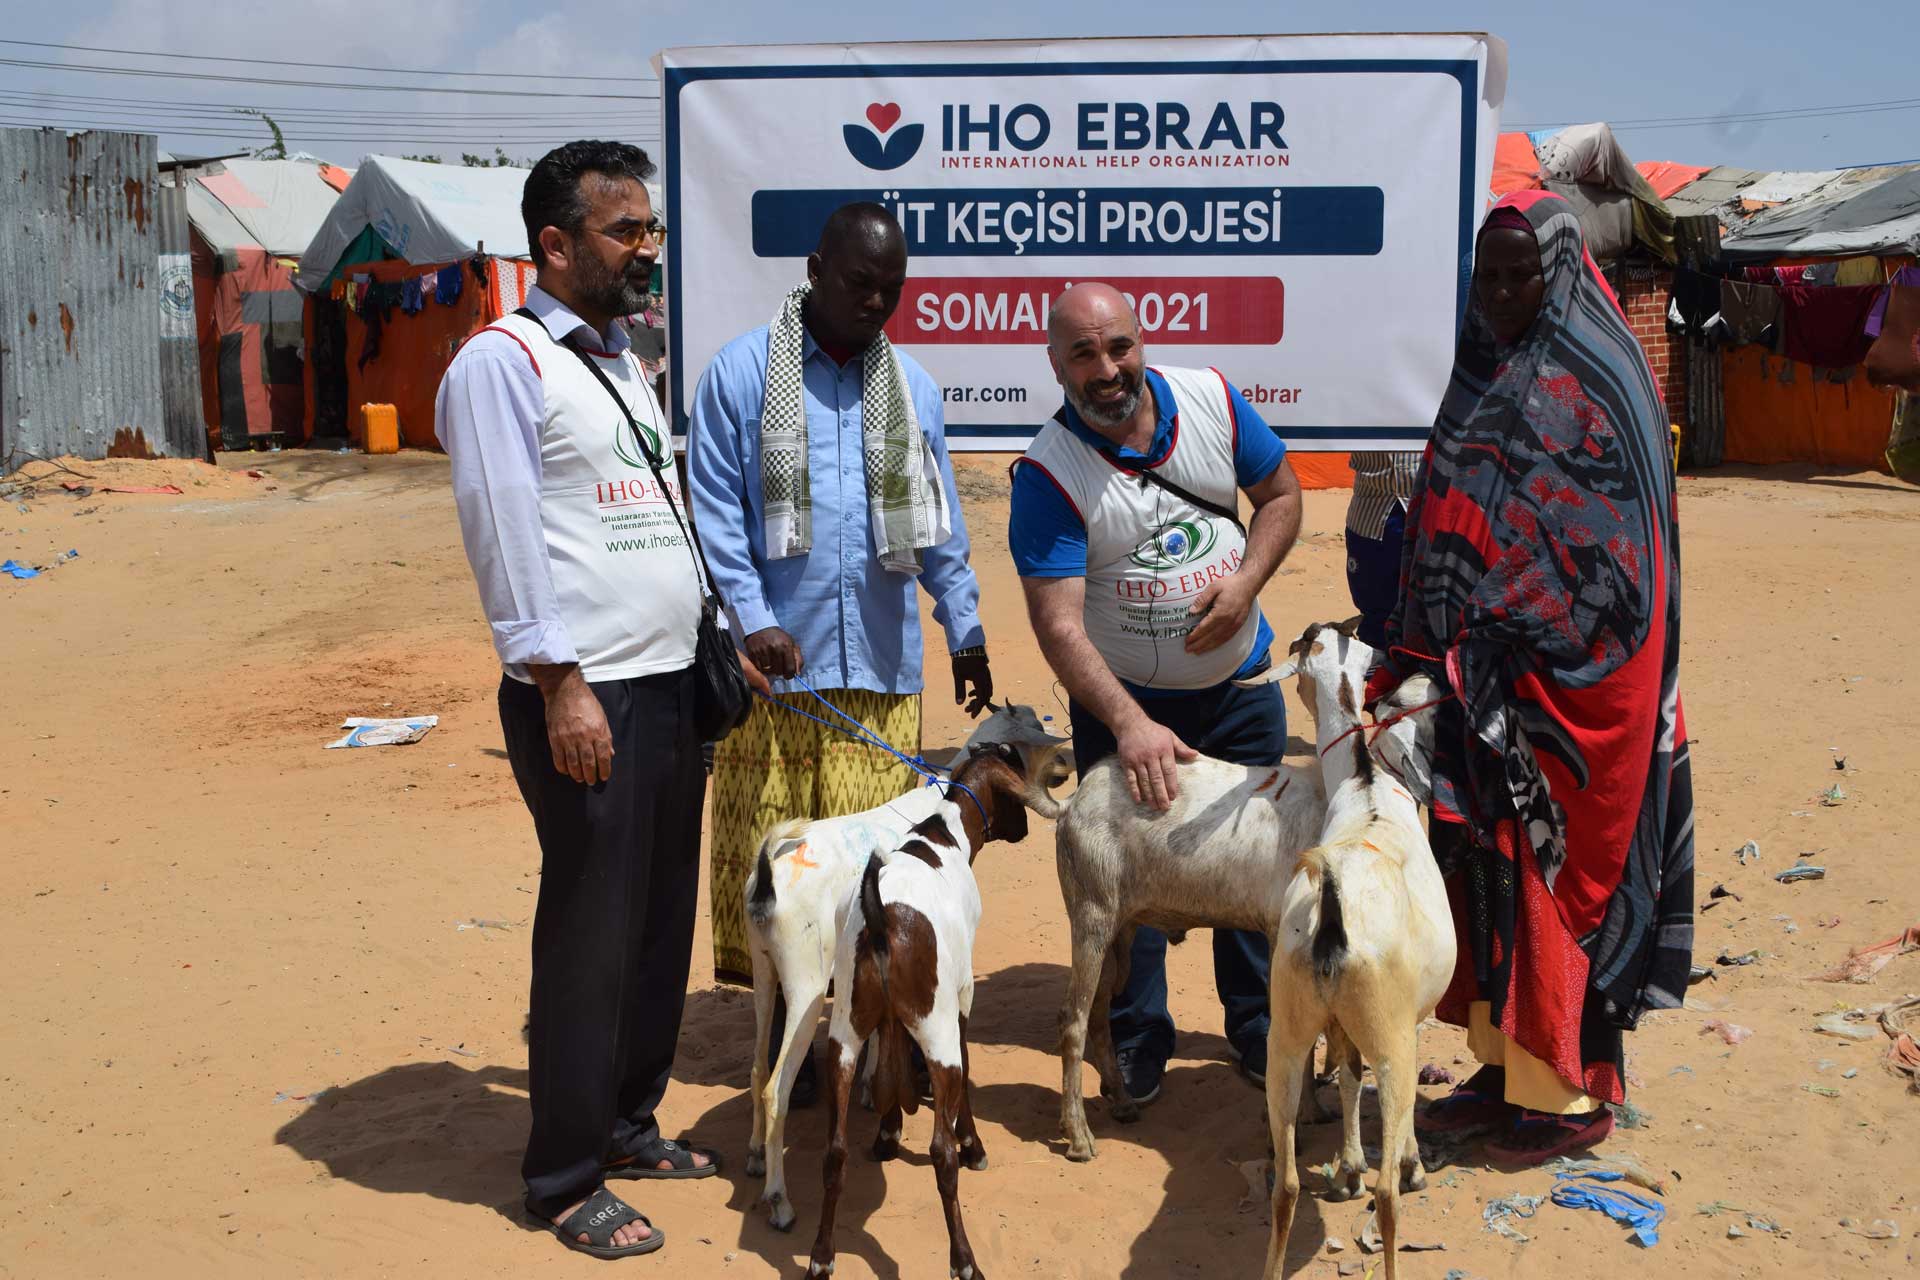 Somali’ye “Süt Keçisi Projesi”